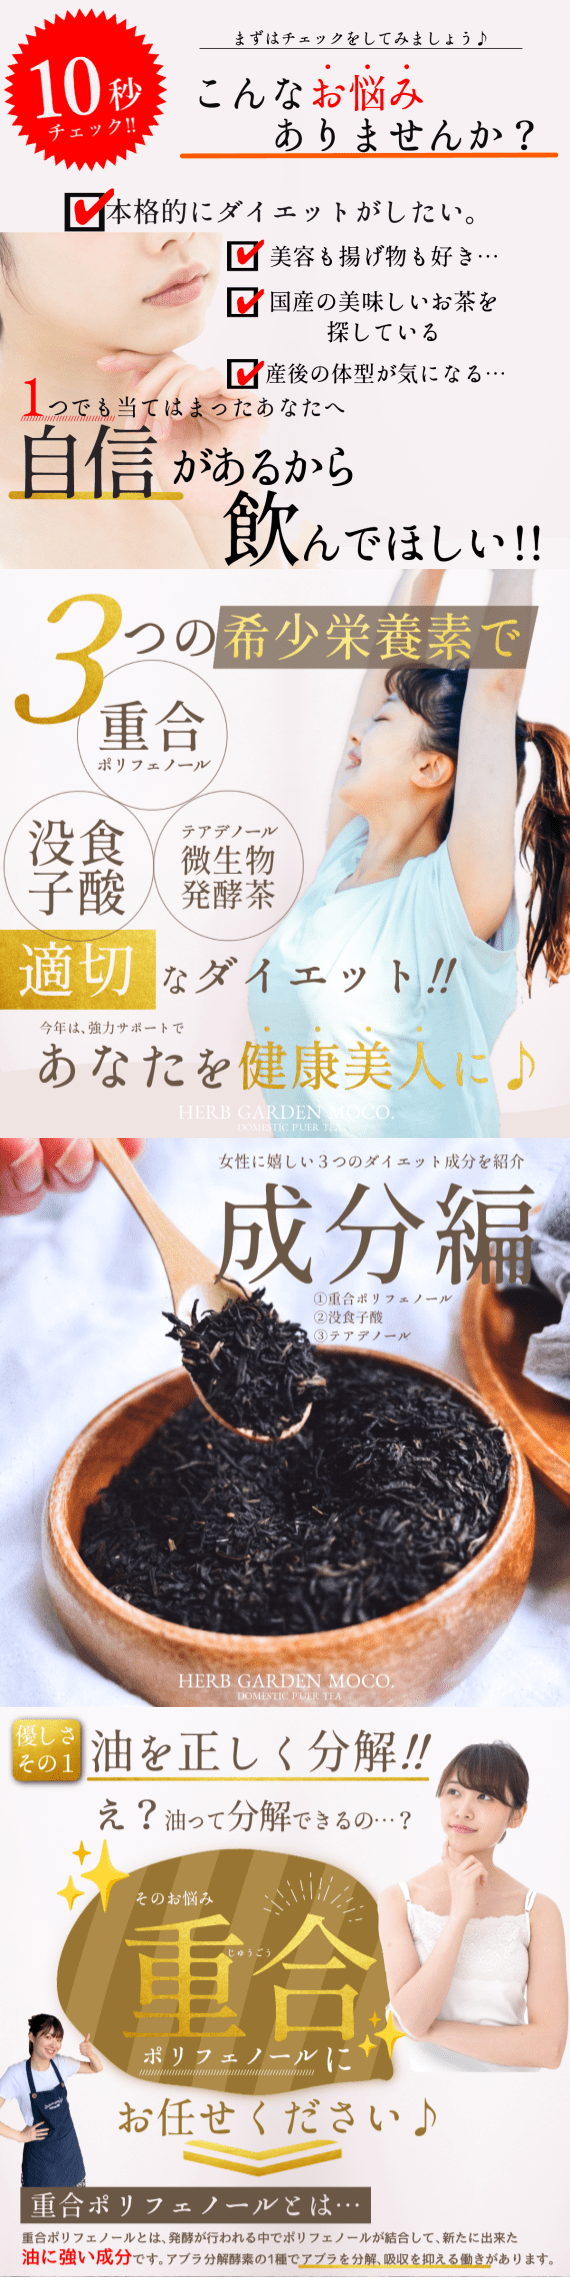 国産プーアール茶・健康美人の習慣スリム茶【お試し10個入・送料無料メール便】